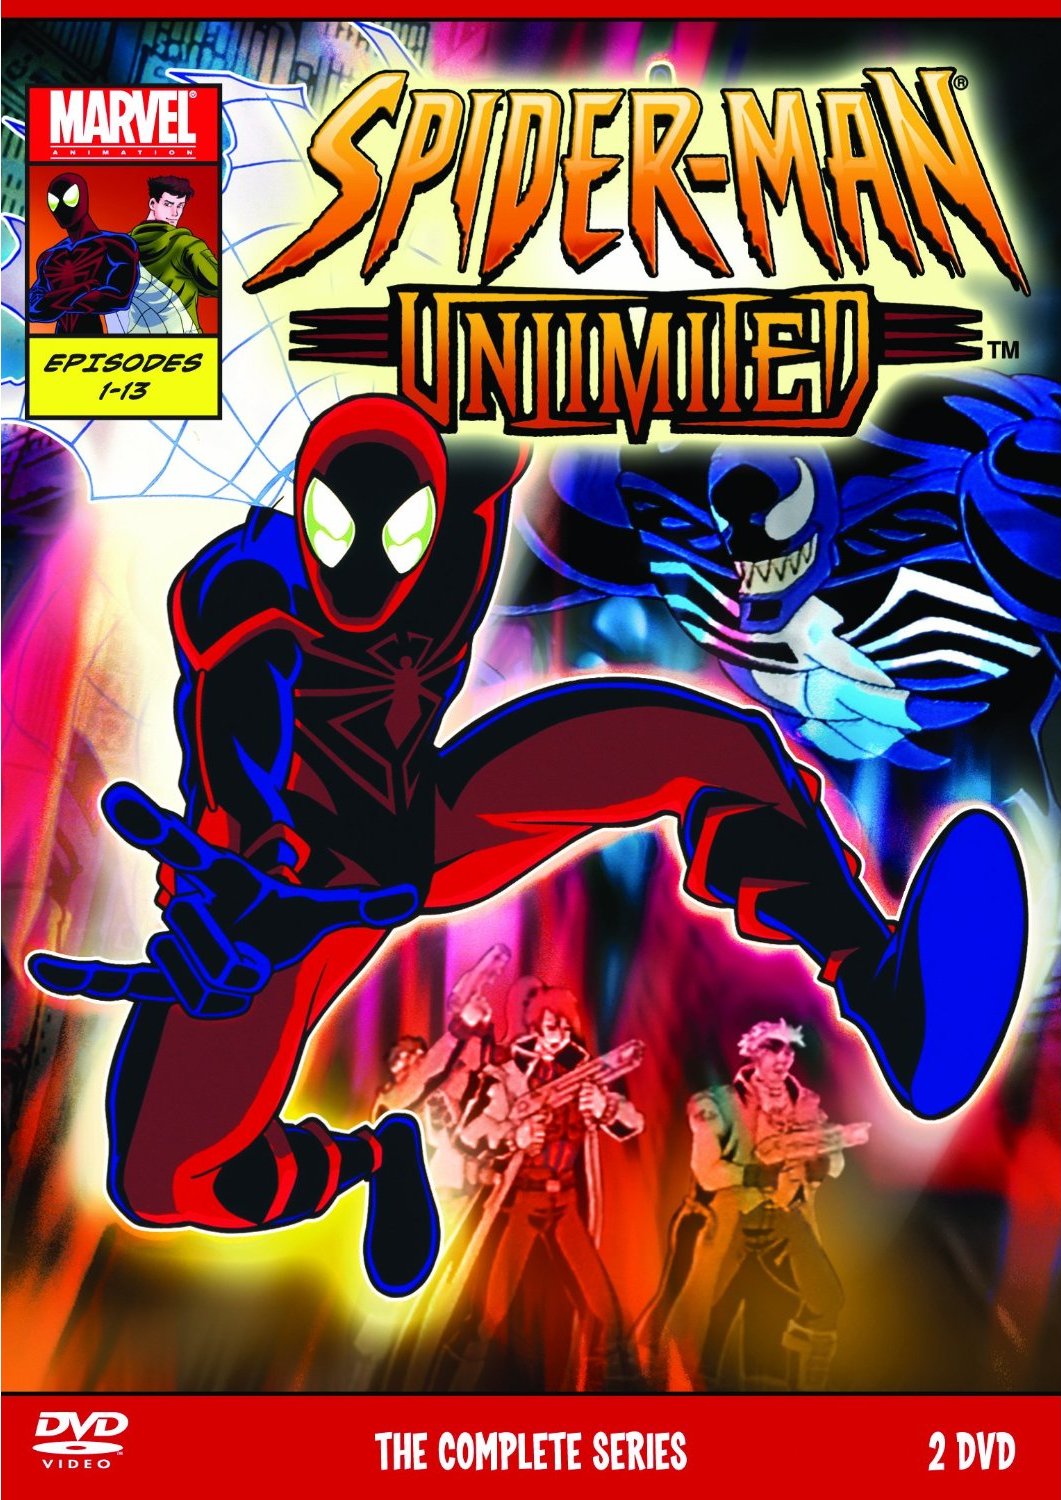 Spider-Man+Unlimited+Im01.jpg